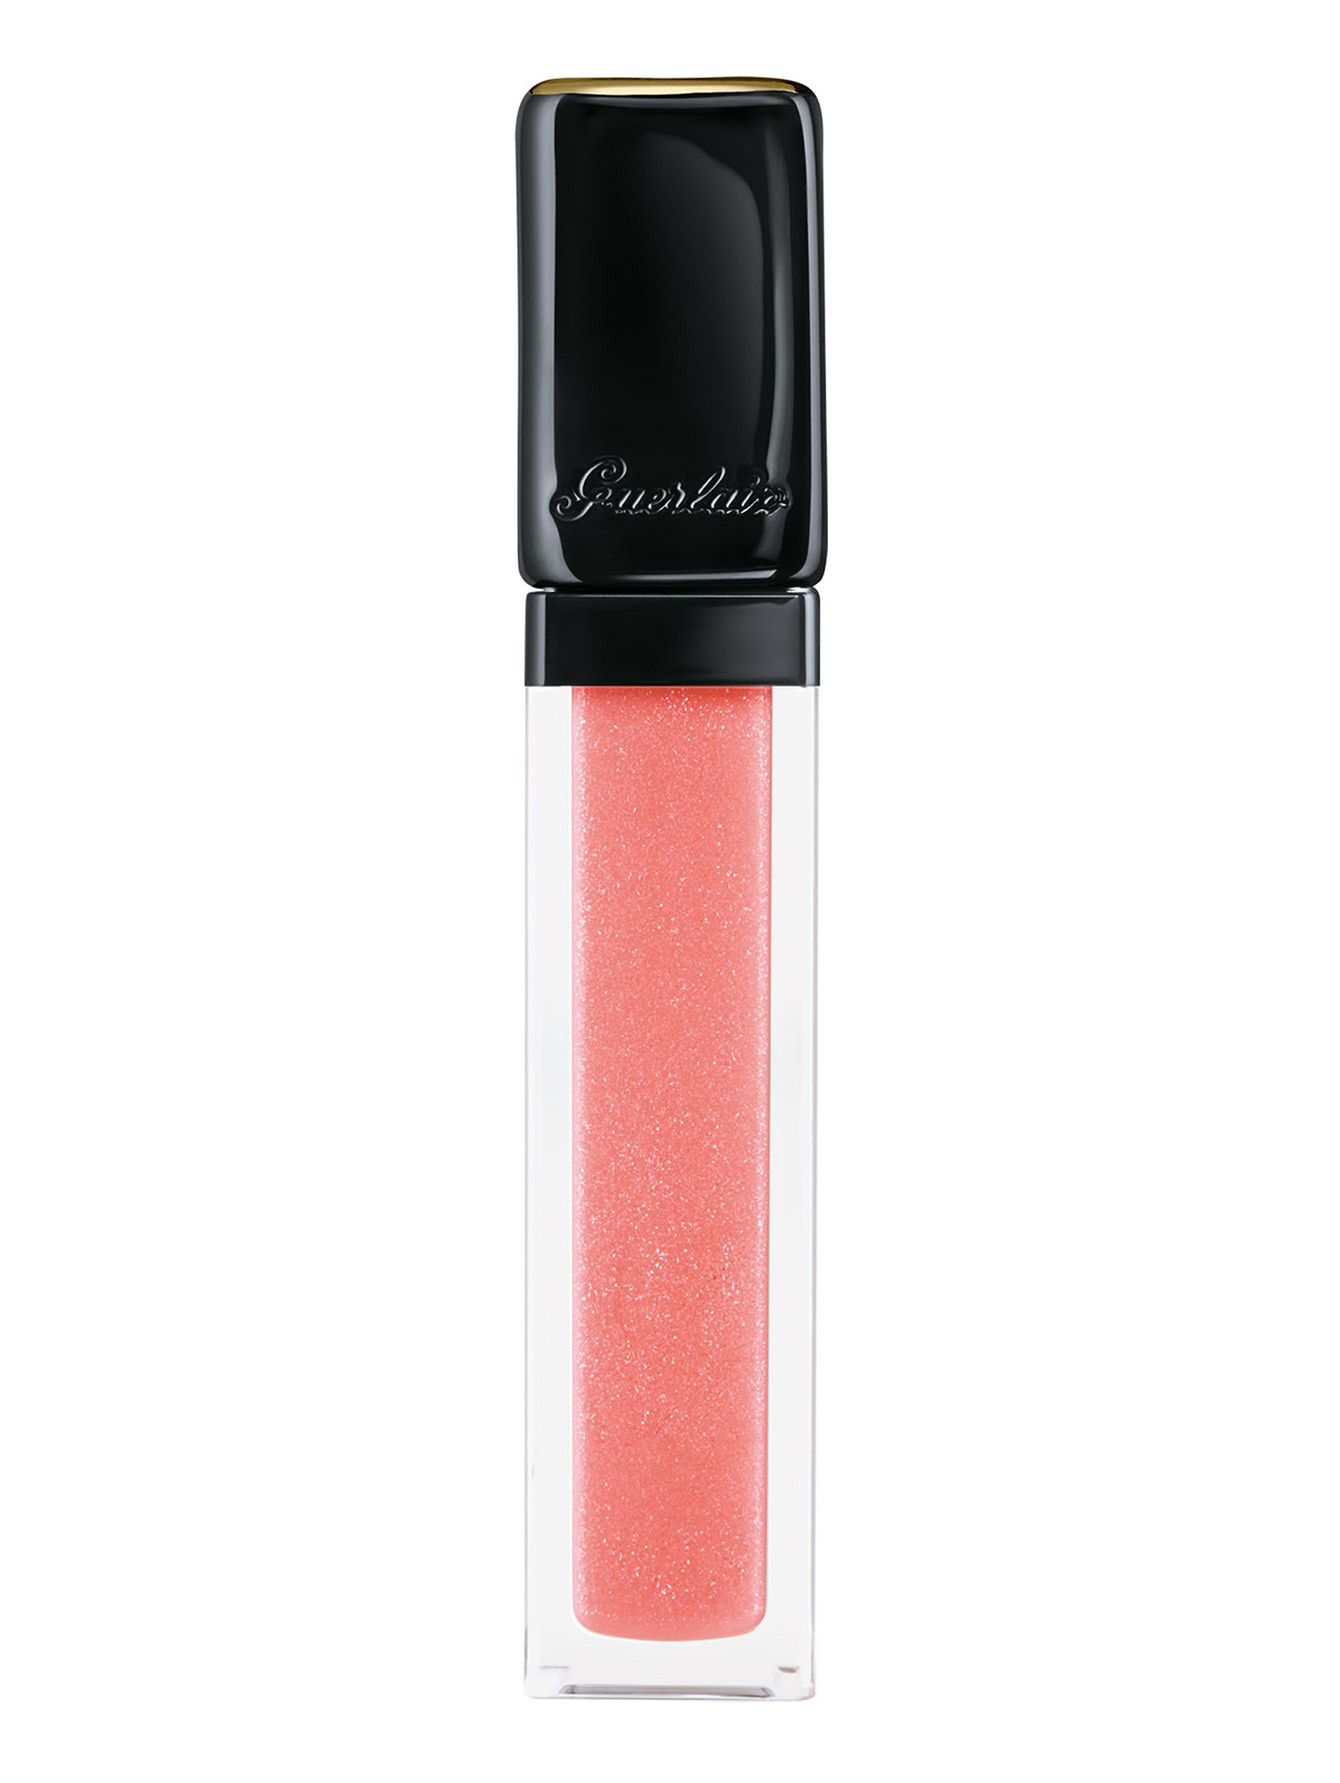 Жидкая глянцевая помада для губ KISSKISS, L361 Очаровательный розовый, 5,8 мл - Общий вид